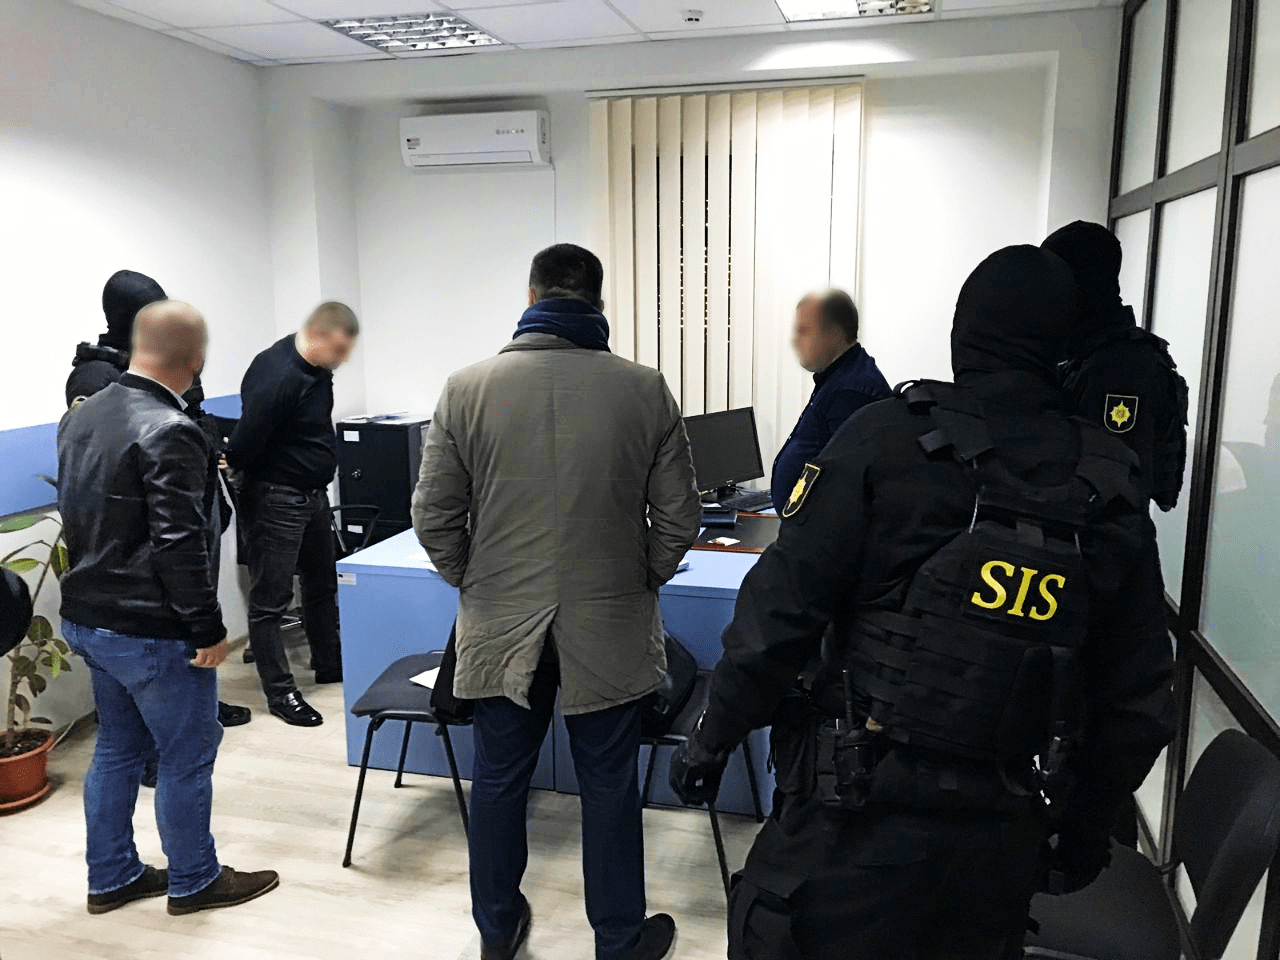 Percheziții SIS la Bălți. Doi angajați ai Biroului de Migrație și Azil Bălți au fost reținuți